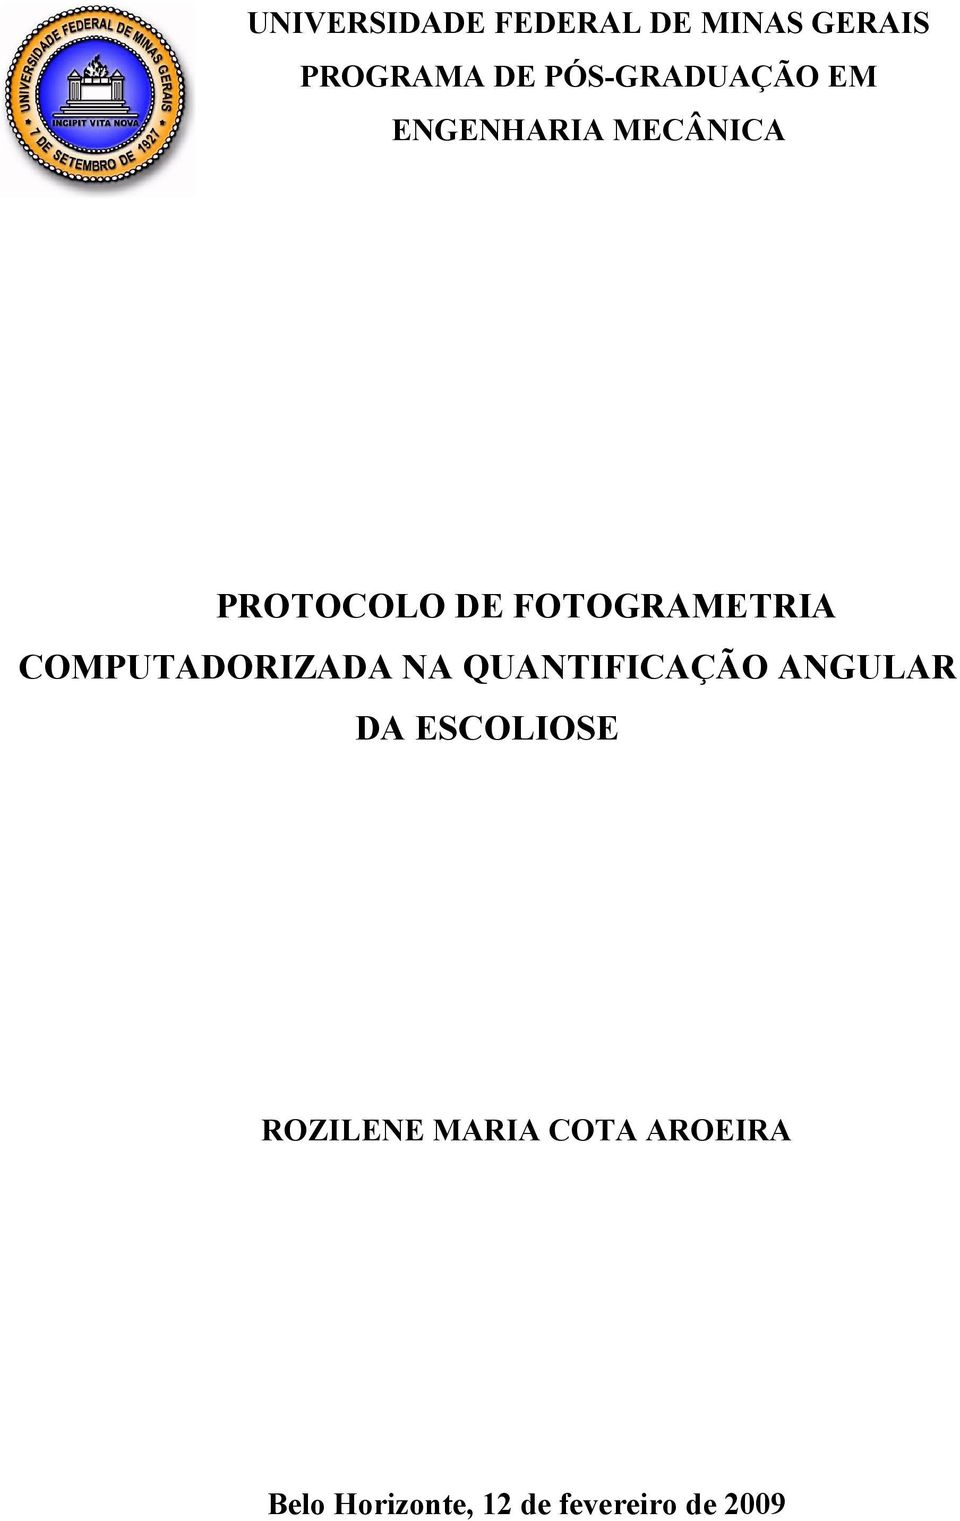 FOTOGRAMETRIA COMPUTADORIZADA NA QUANTIFICAÇÃO ANGULAR DA